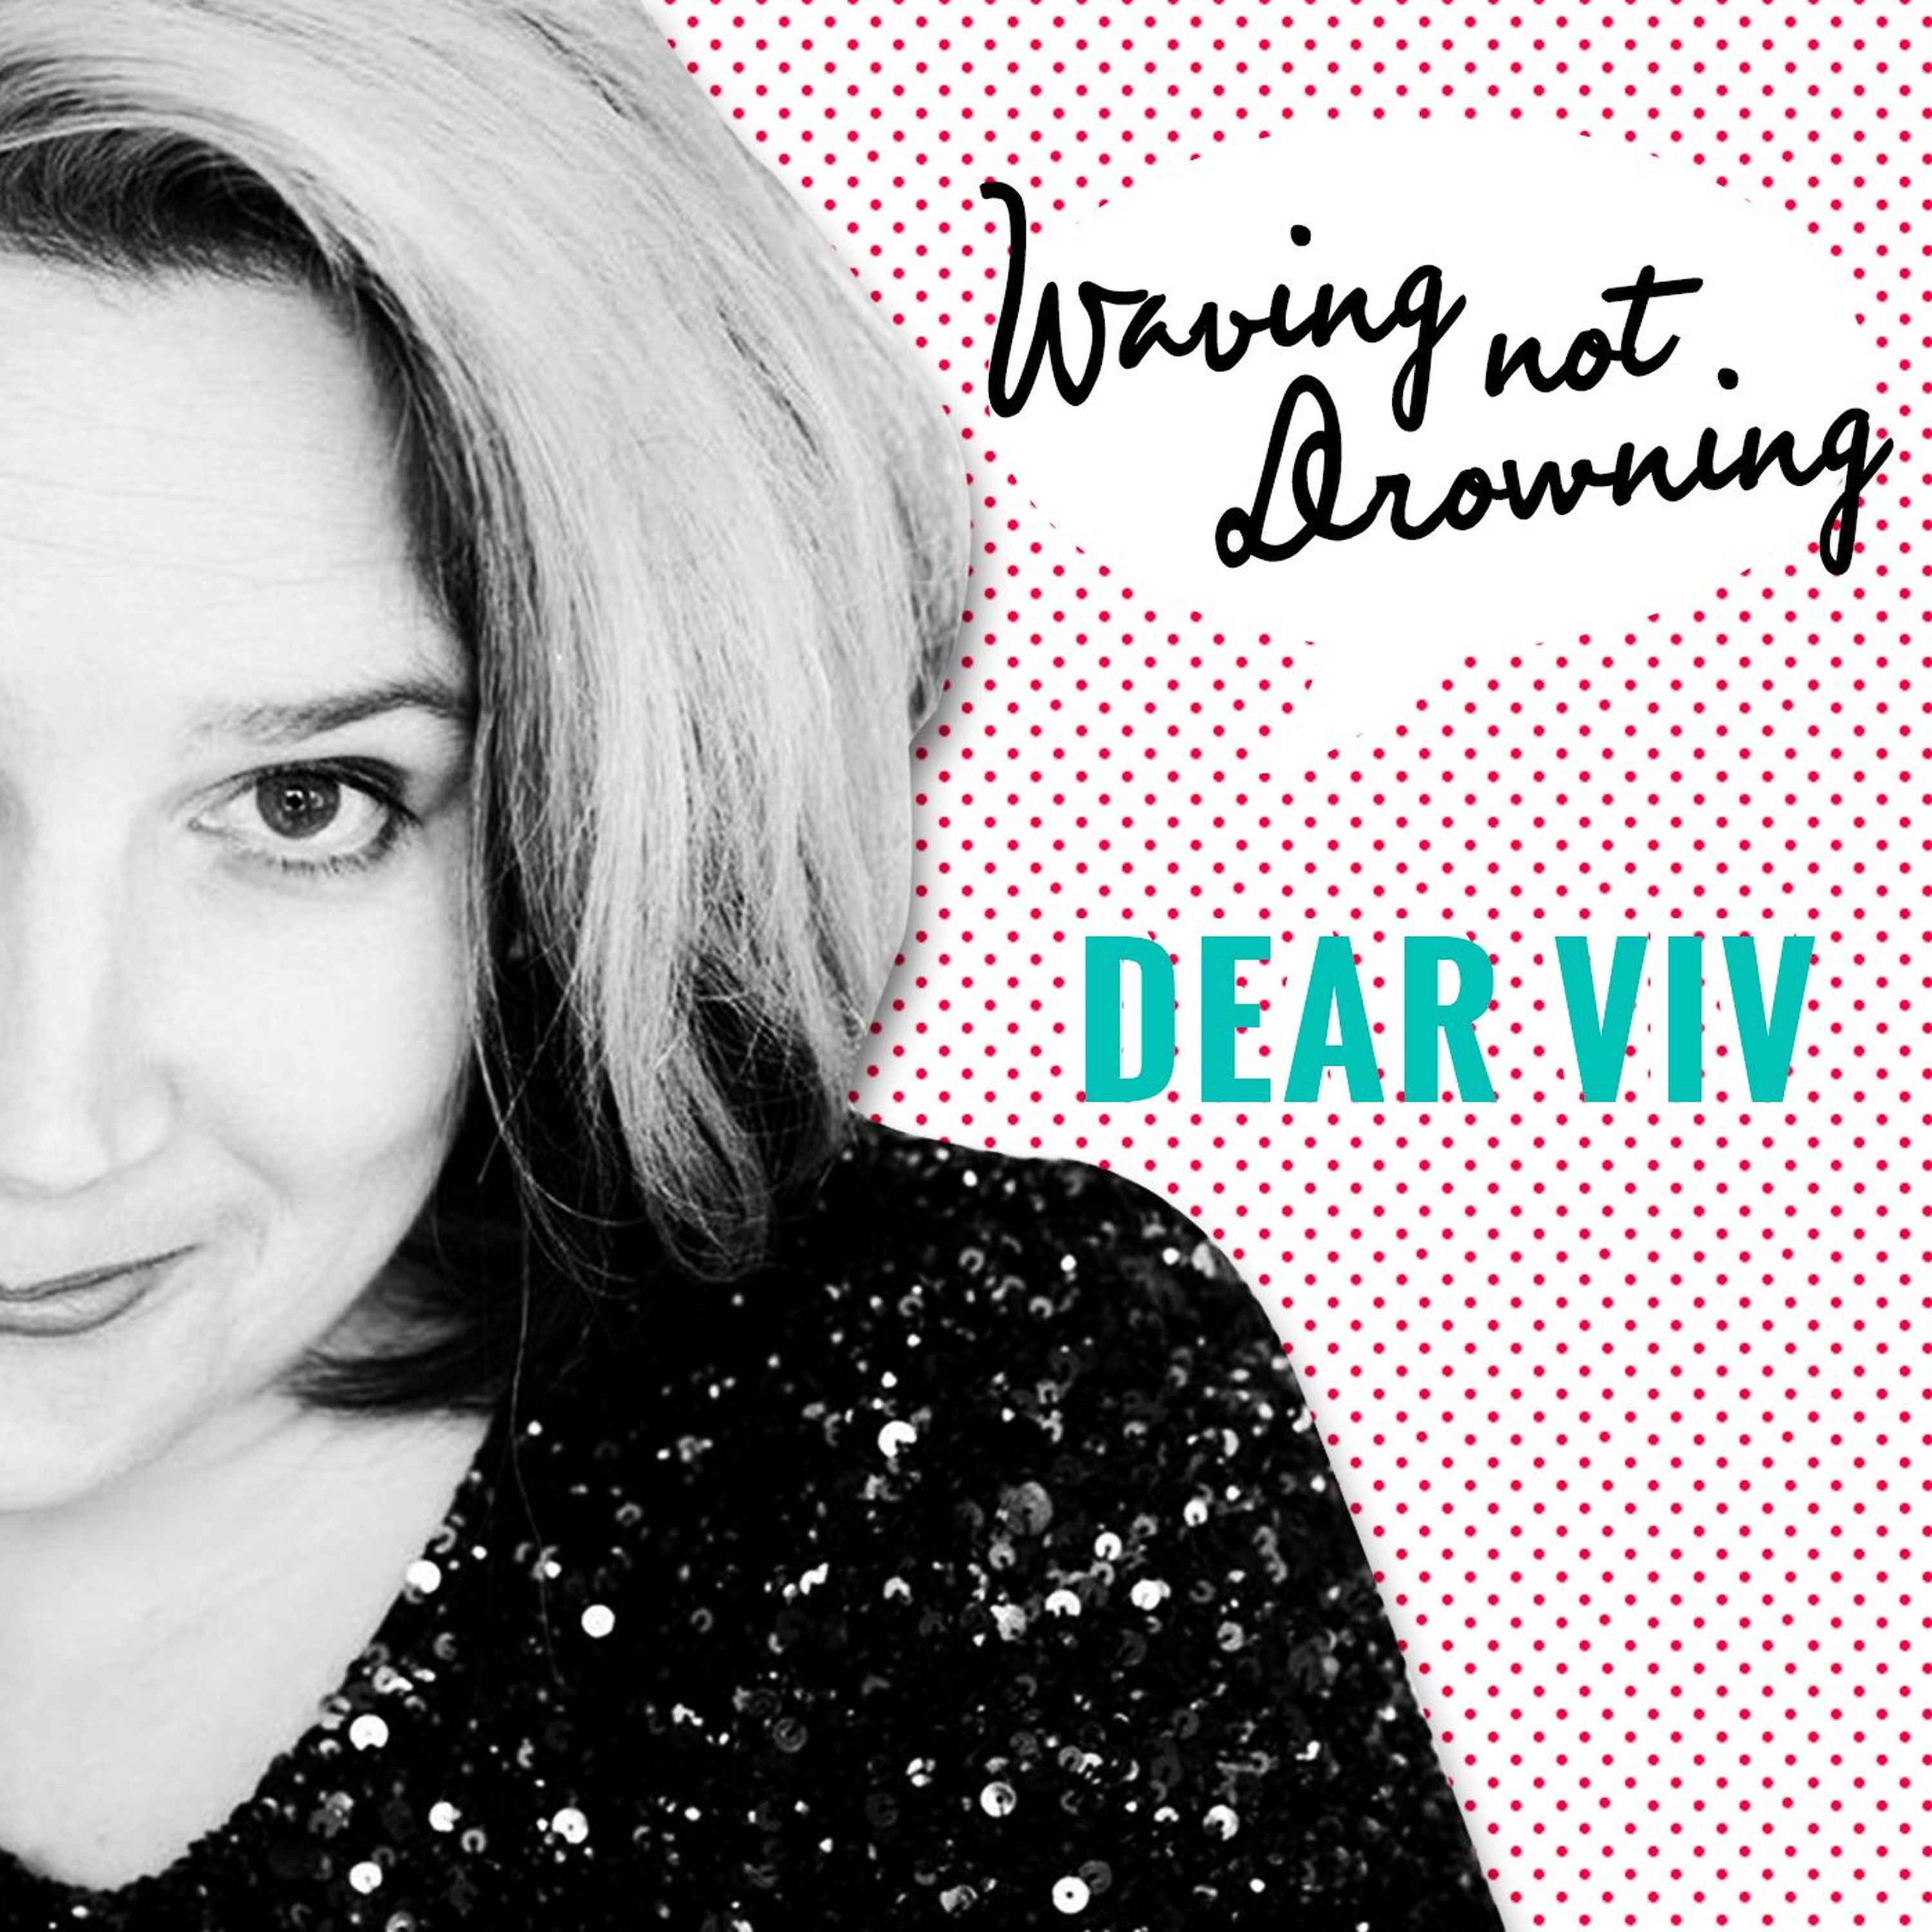 Dear Viv: I feel overwhelmed by life